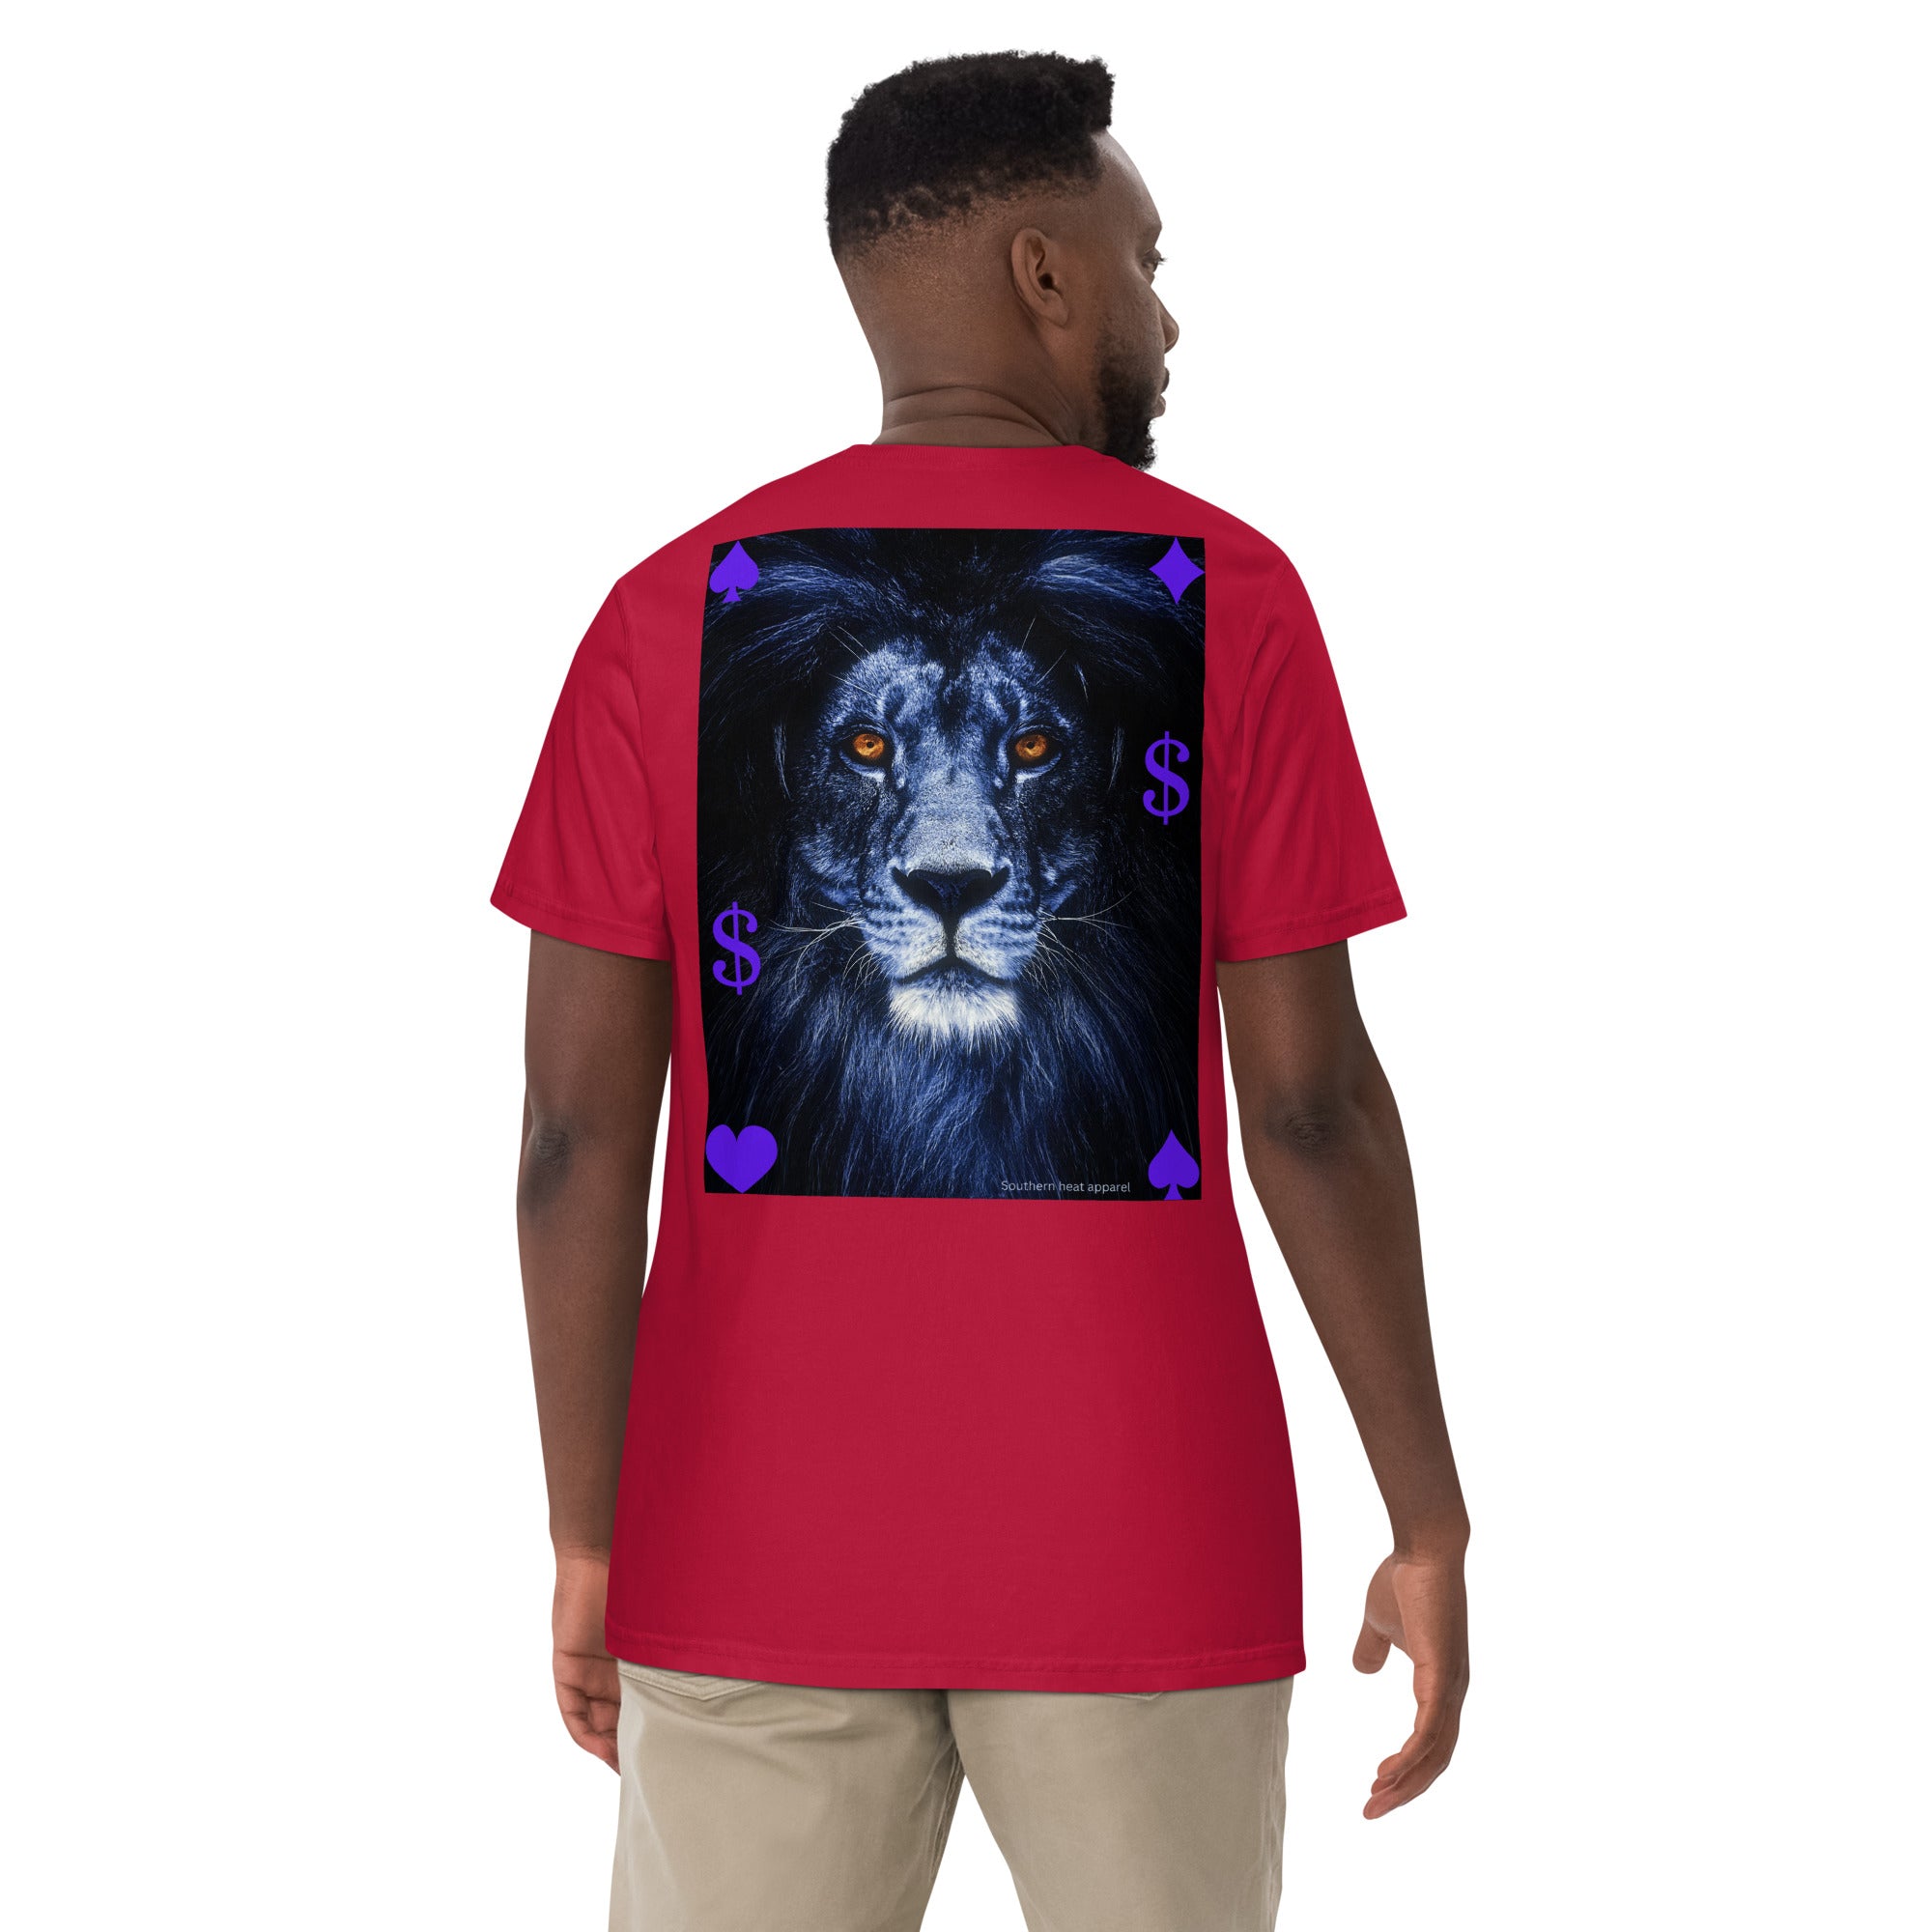 Lion heart-Mens garment-dyed heavyweight t-shirt